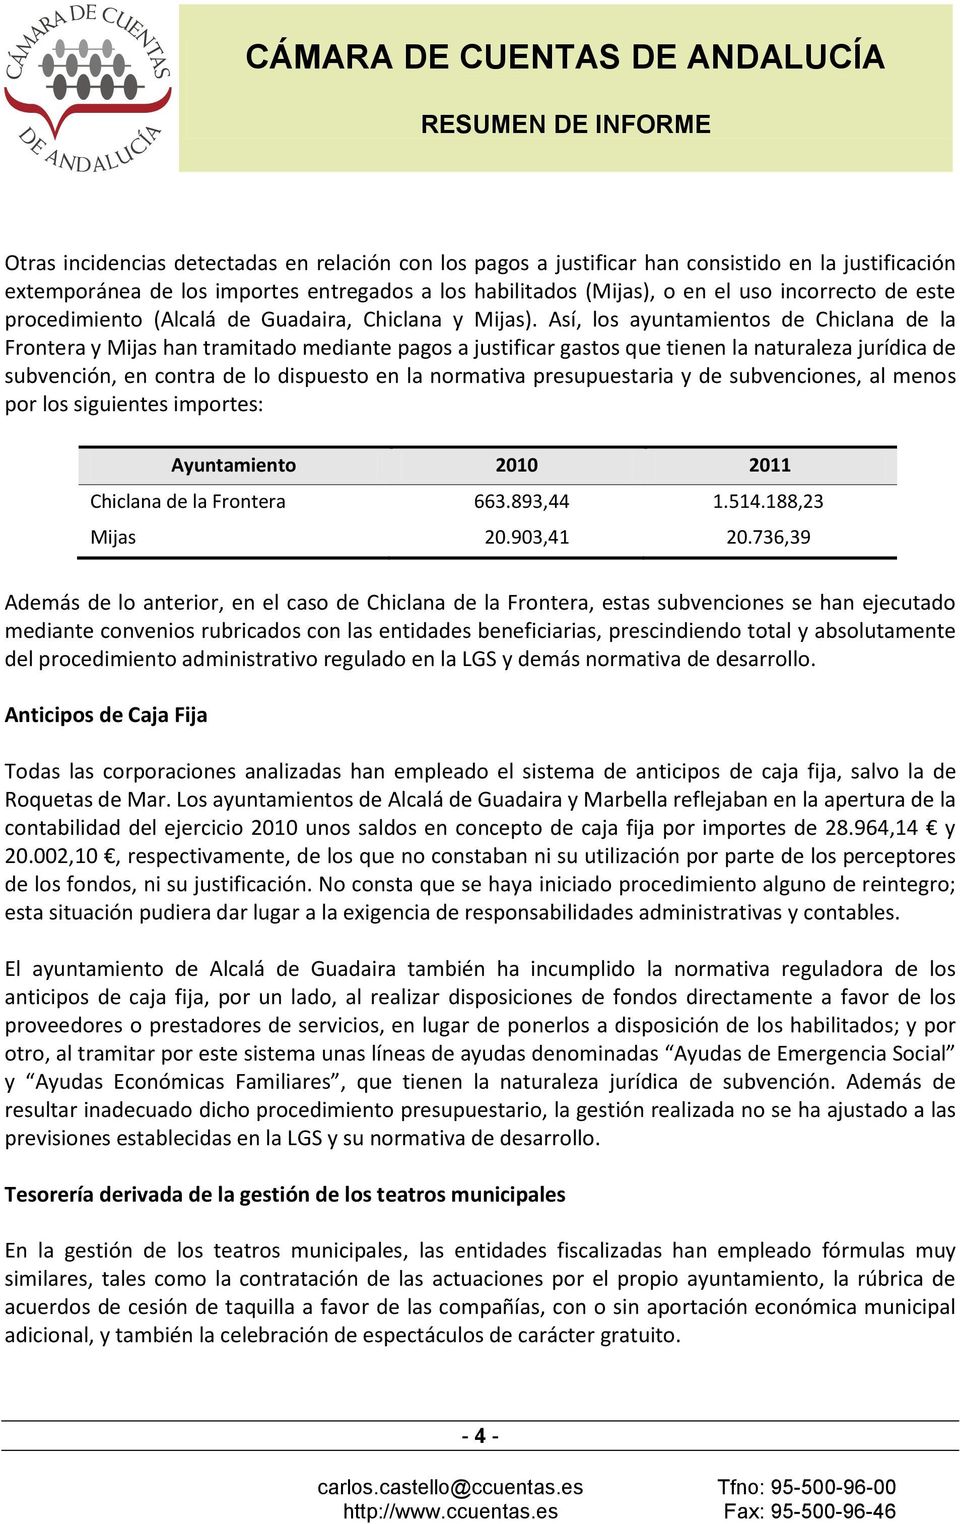 Así, los ayuntamientos de Chiclana de la Frontera y Mijas han tramitado mediante pagos a justificar gastos que tienen la naturaleza jurídica de subvención, en contra de lo dispuesto en la normativa